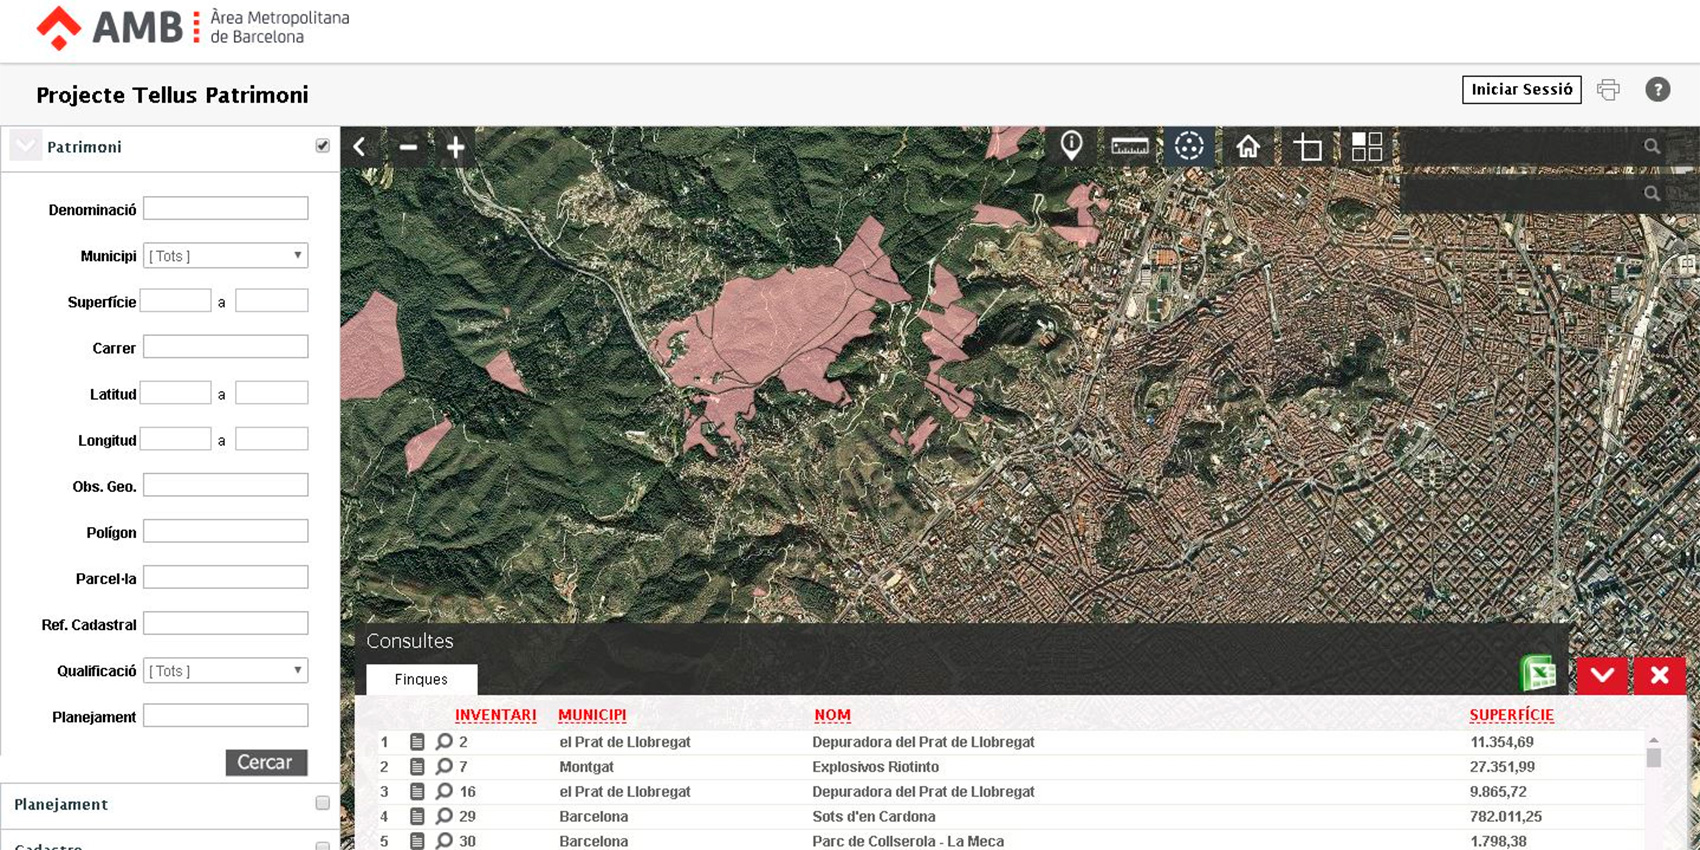 Mapa interactivo de AMB, para la gestin y consulta del patrimonio local